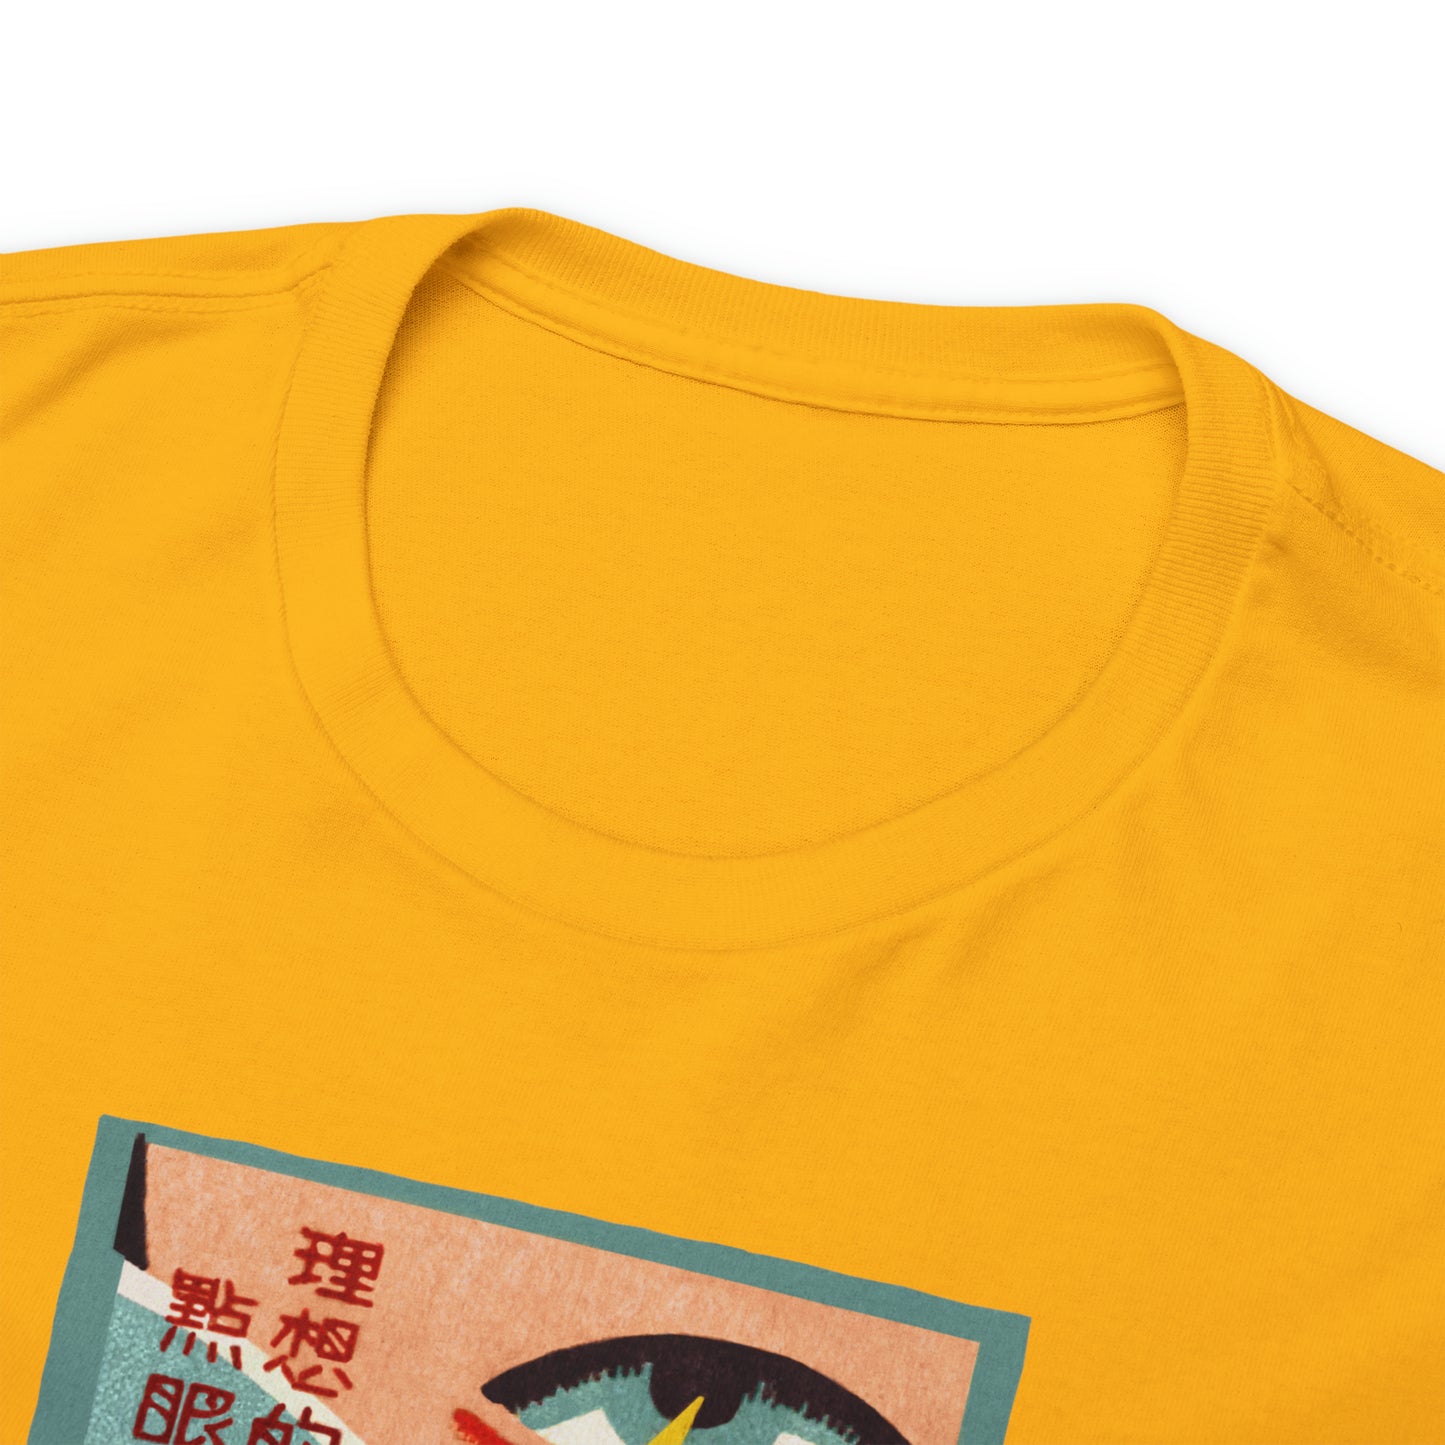 Japanese Matchbook T-Shirt